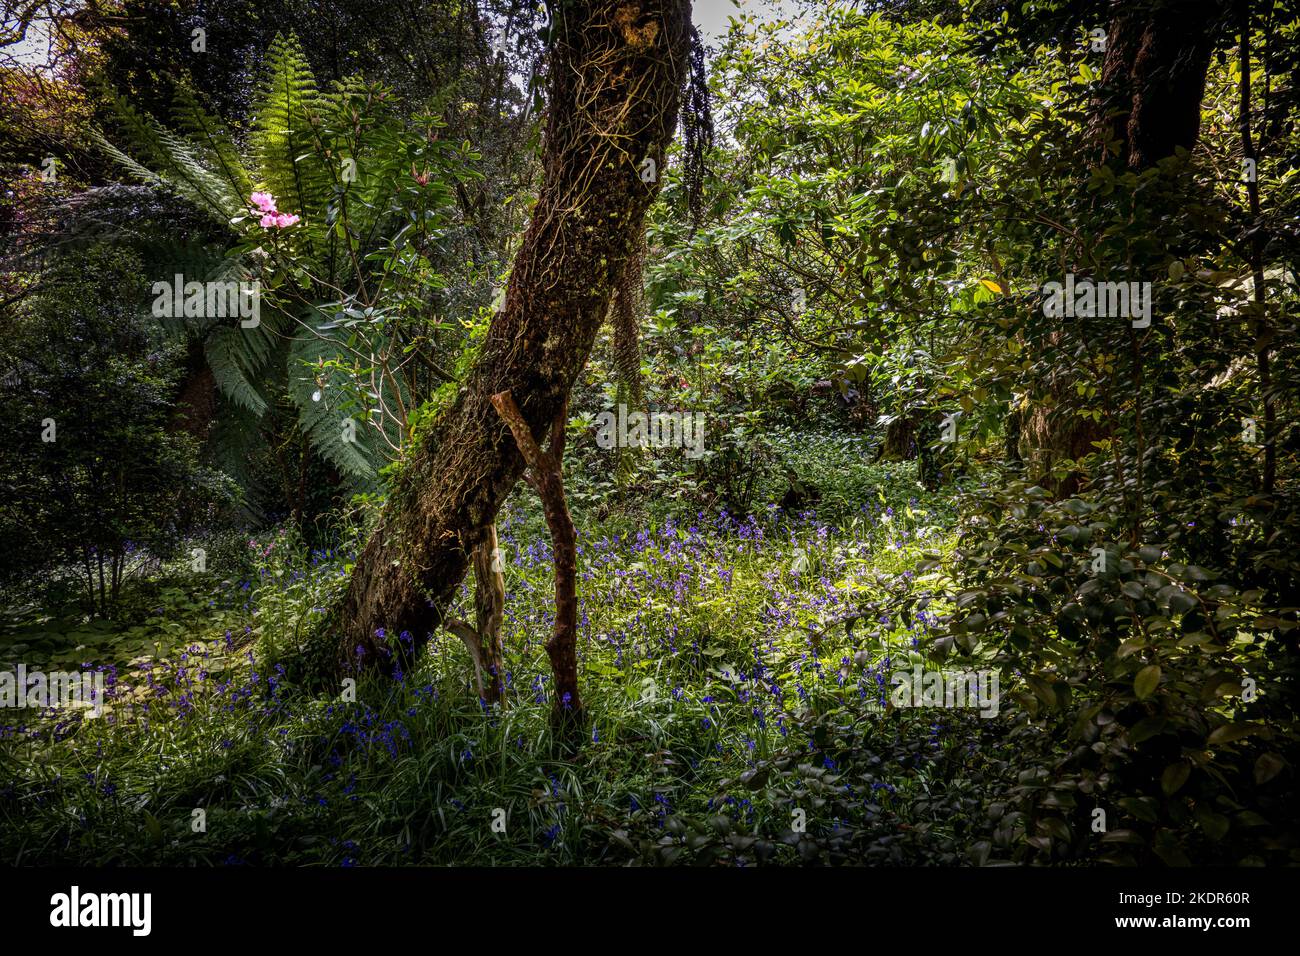 Un arbre a été soutenu avec des branches sciées dans le sous-tropical sauvage; Penjjick Garden à Cornwall. Penjerrick Garden est reconnu comme la véritable jungle de Cornmules Banque D'Images